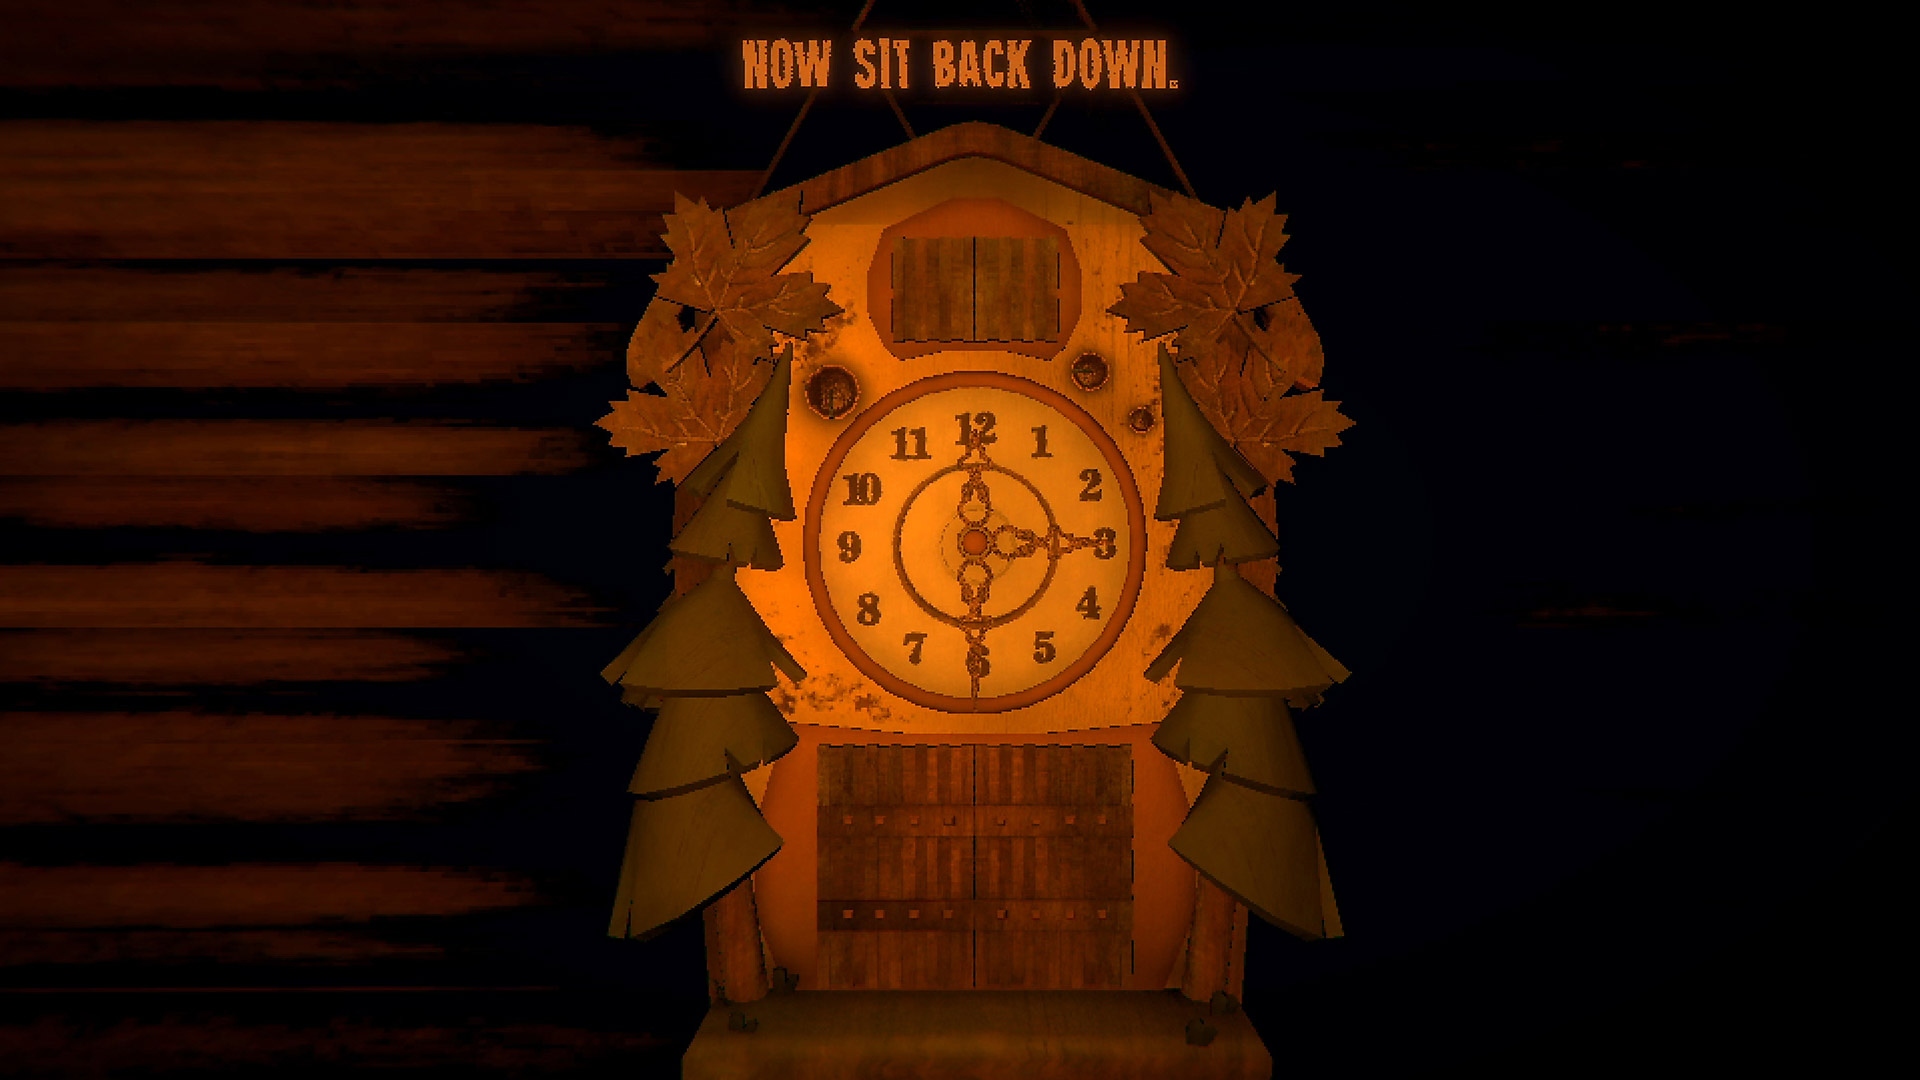 Capture d'écran de gameplay d'Inscryption montrant une horloge suisse possédant trois aiguilles.